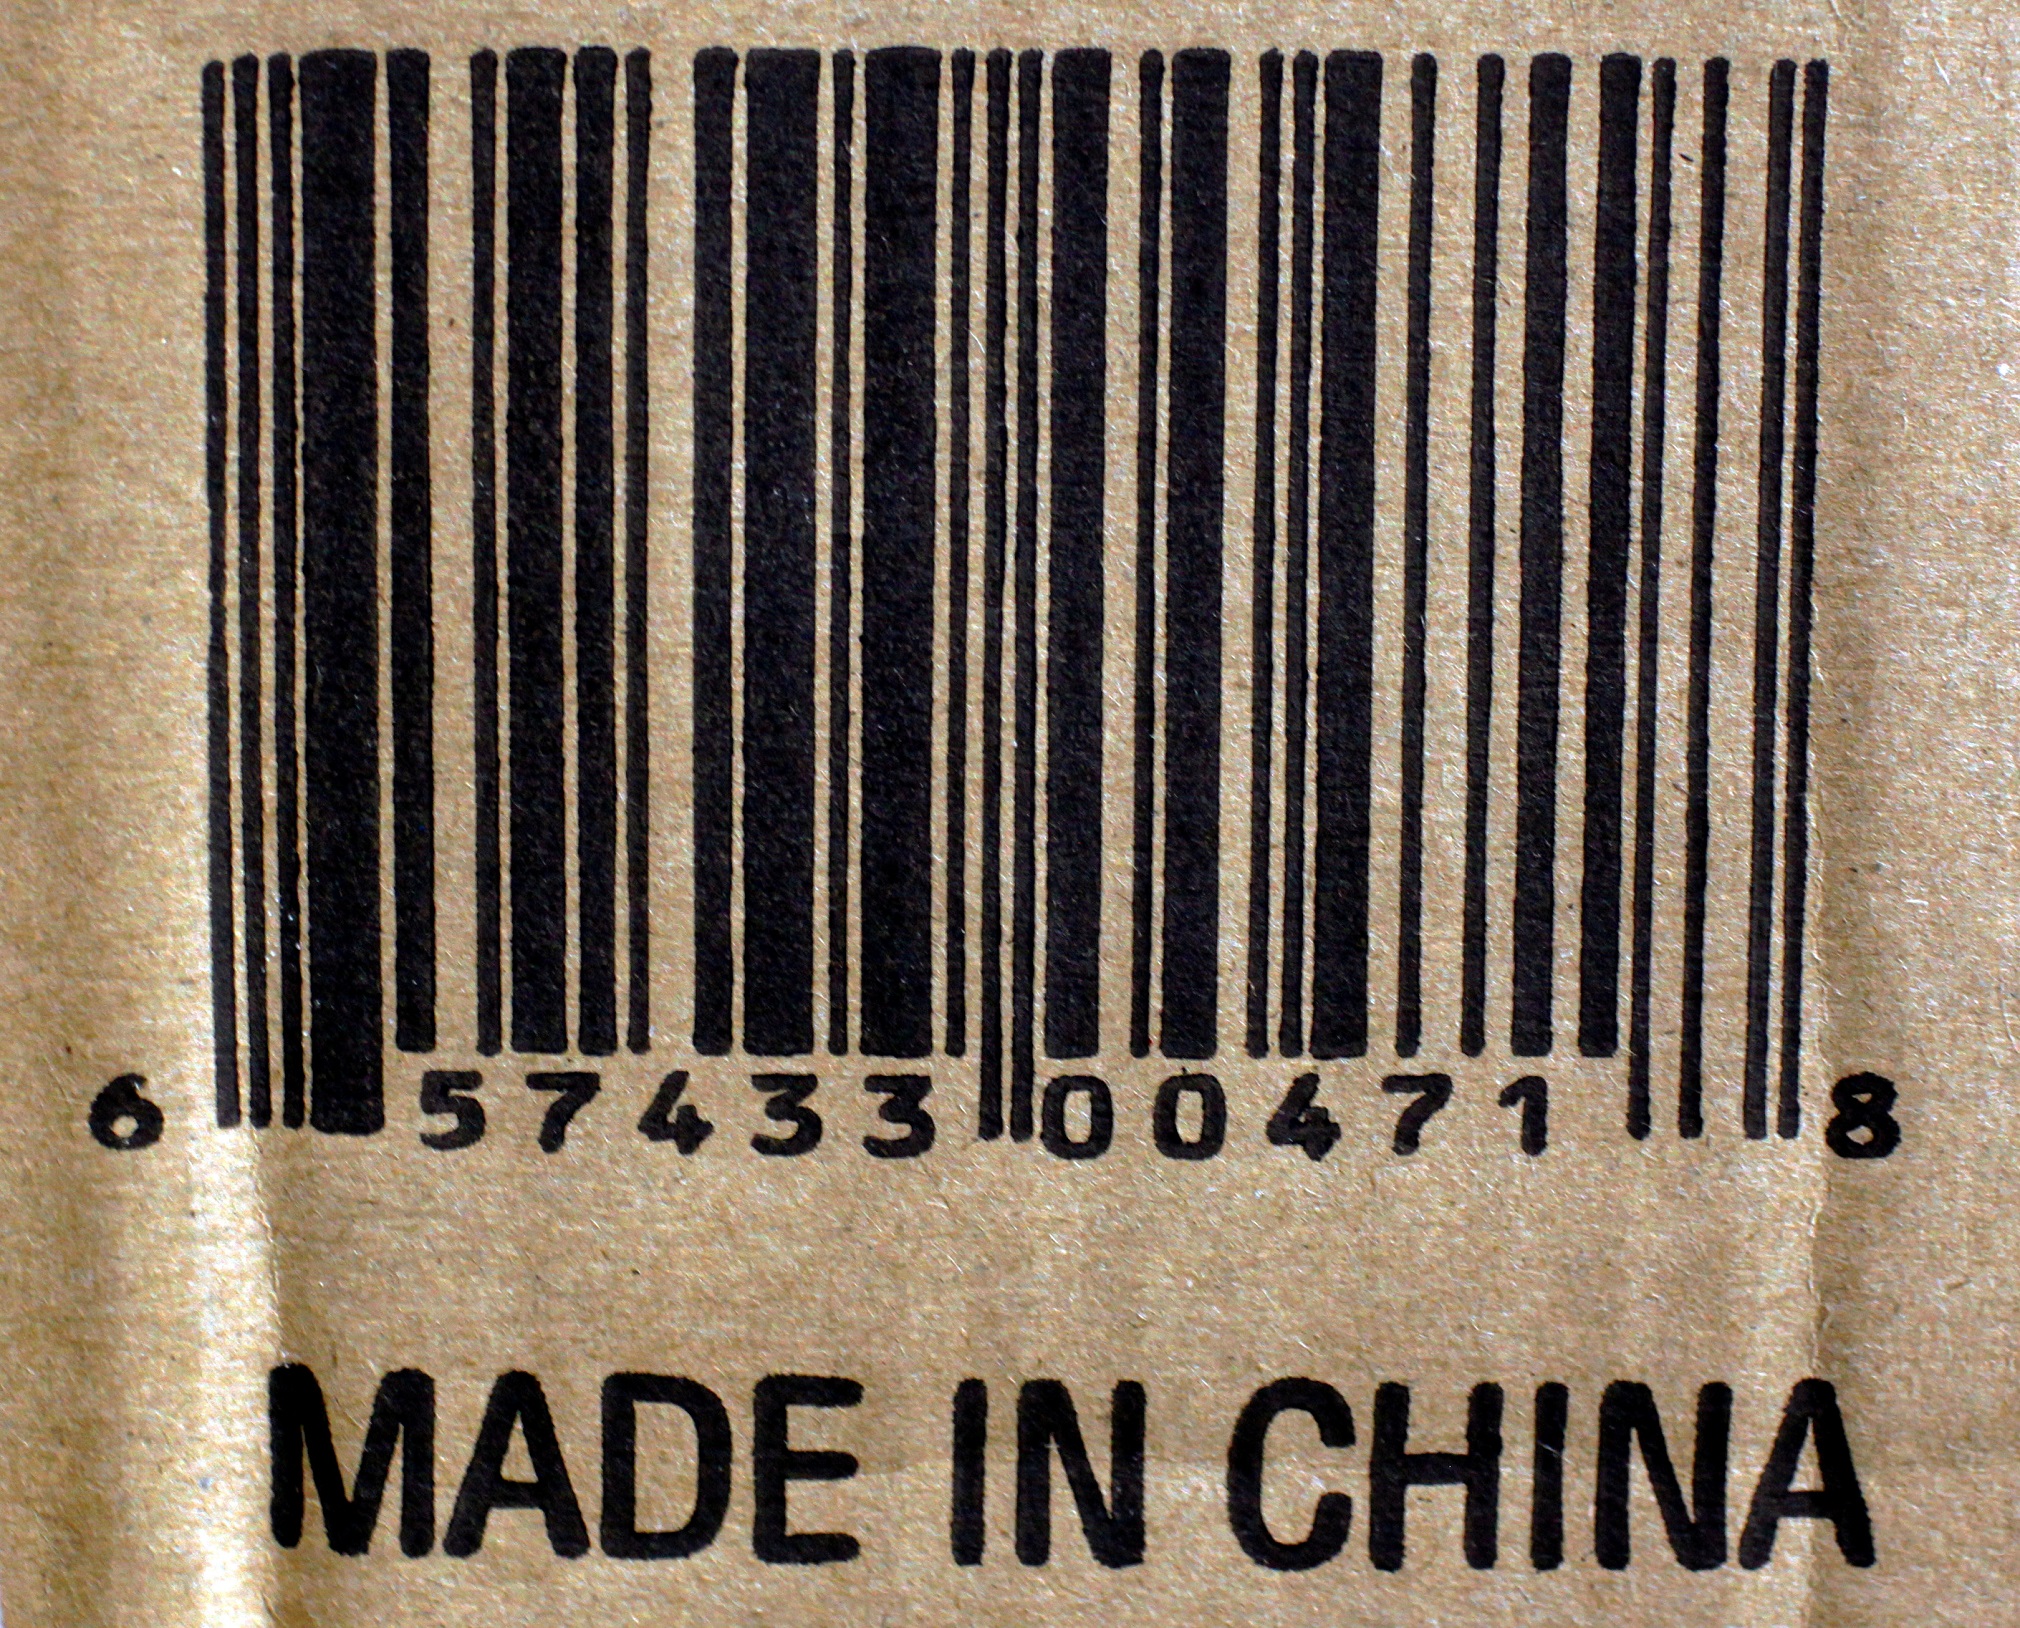 صندوق يحوي ثلاجة مصنوعة في الصين معروض في متجر في إيفرت في ولاية ماساتشوسيتس الأميركية، 18 كانون الثاني/يناير 2019. (بريان سنايدر/ رويترز)